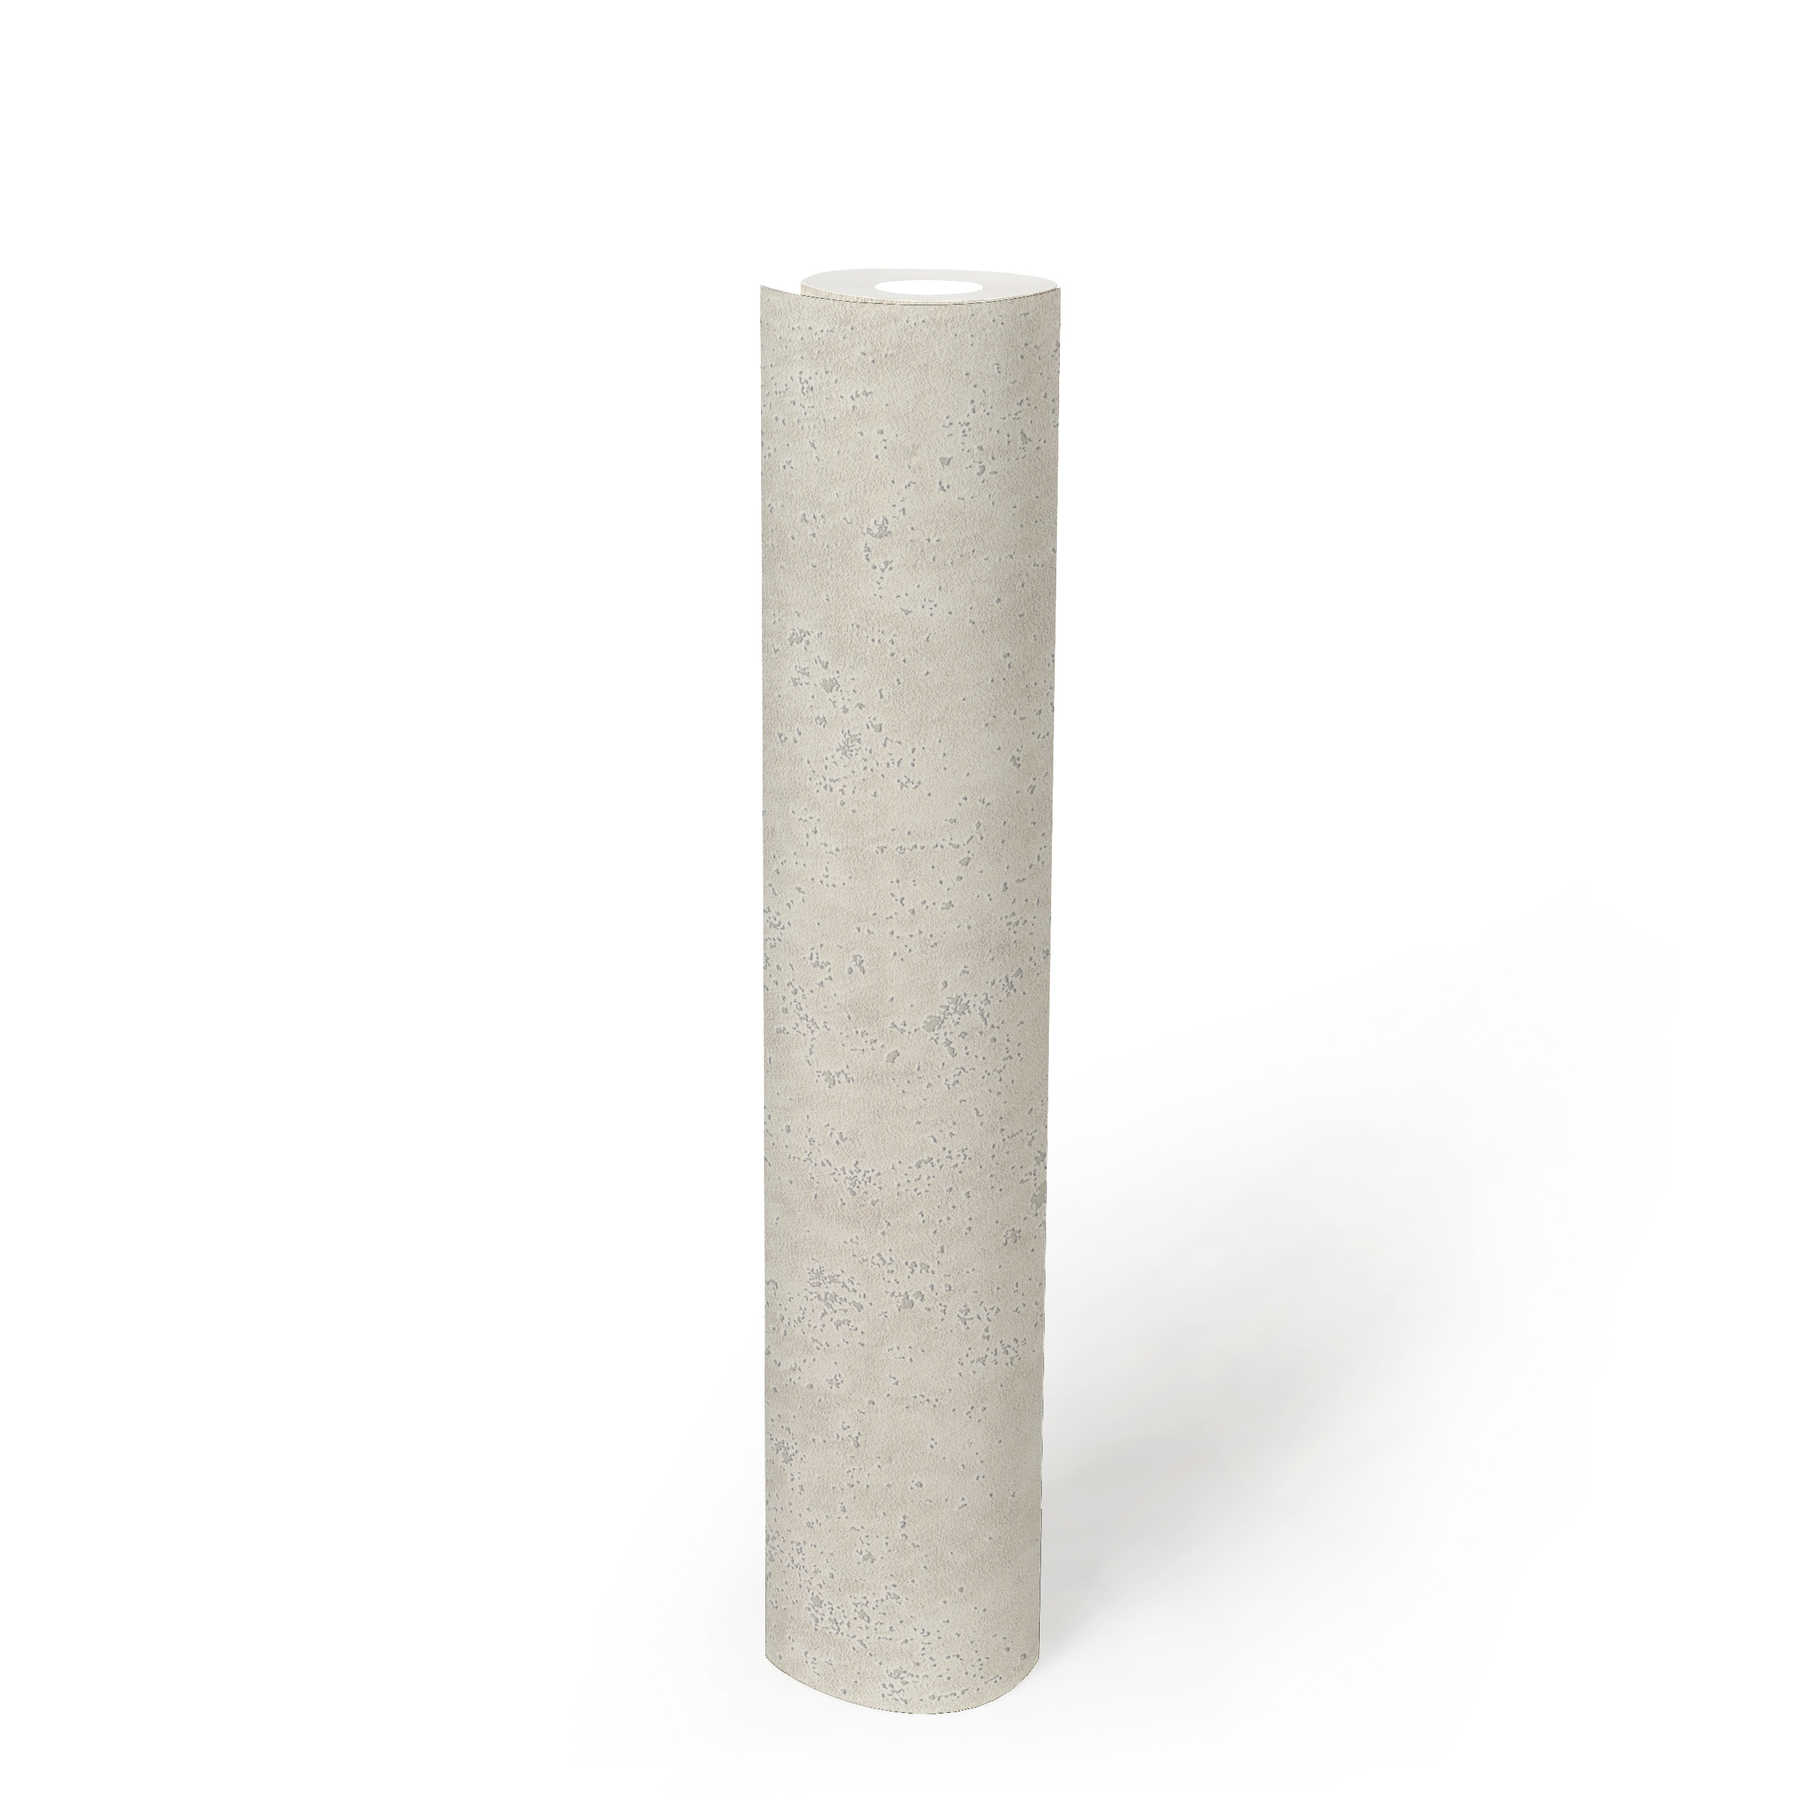             Papel pintado con aspecto de yeso y estructura superficial - crema
        